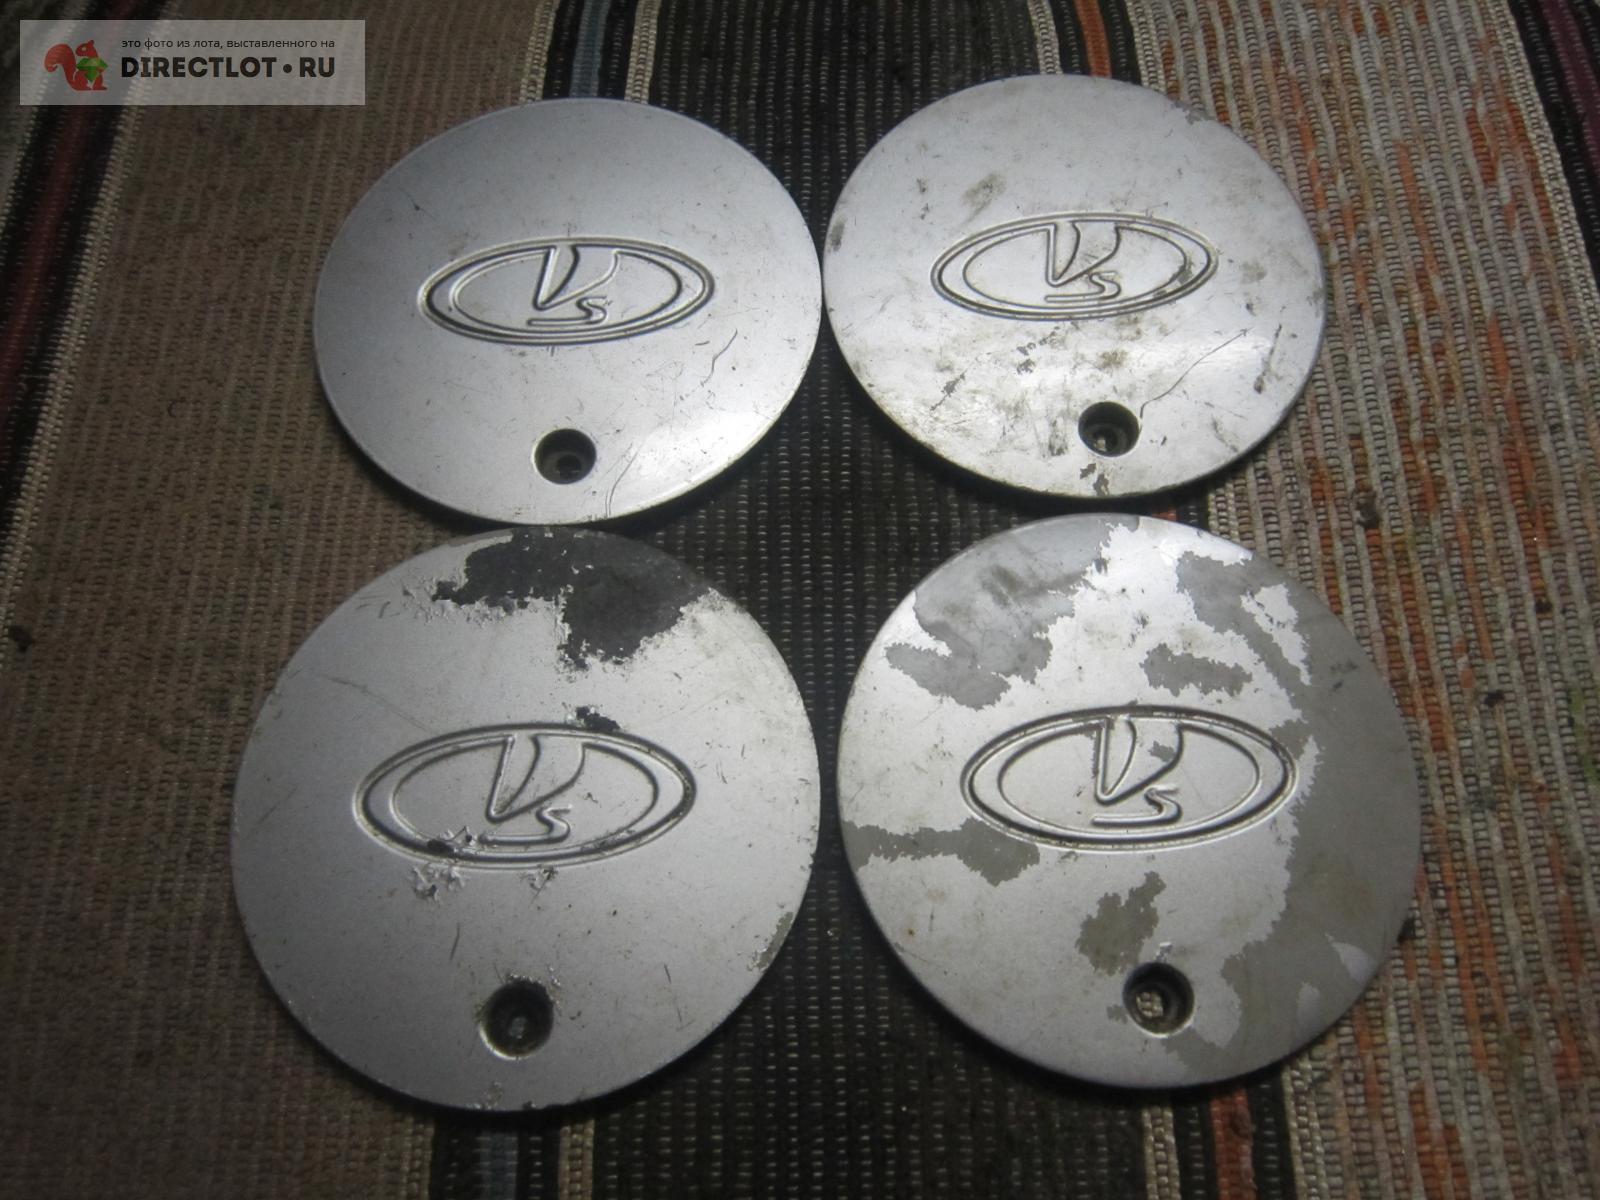 Оригинальные колпаки на литые диски ВАЗ 2112, ставившиеся с завода, R14 .